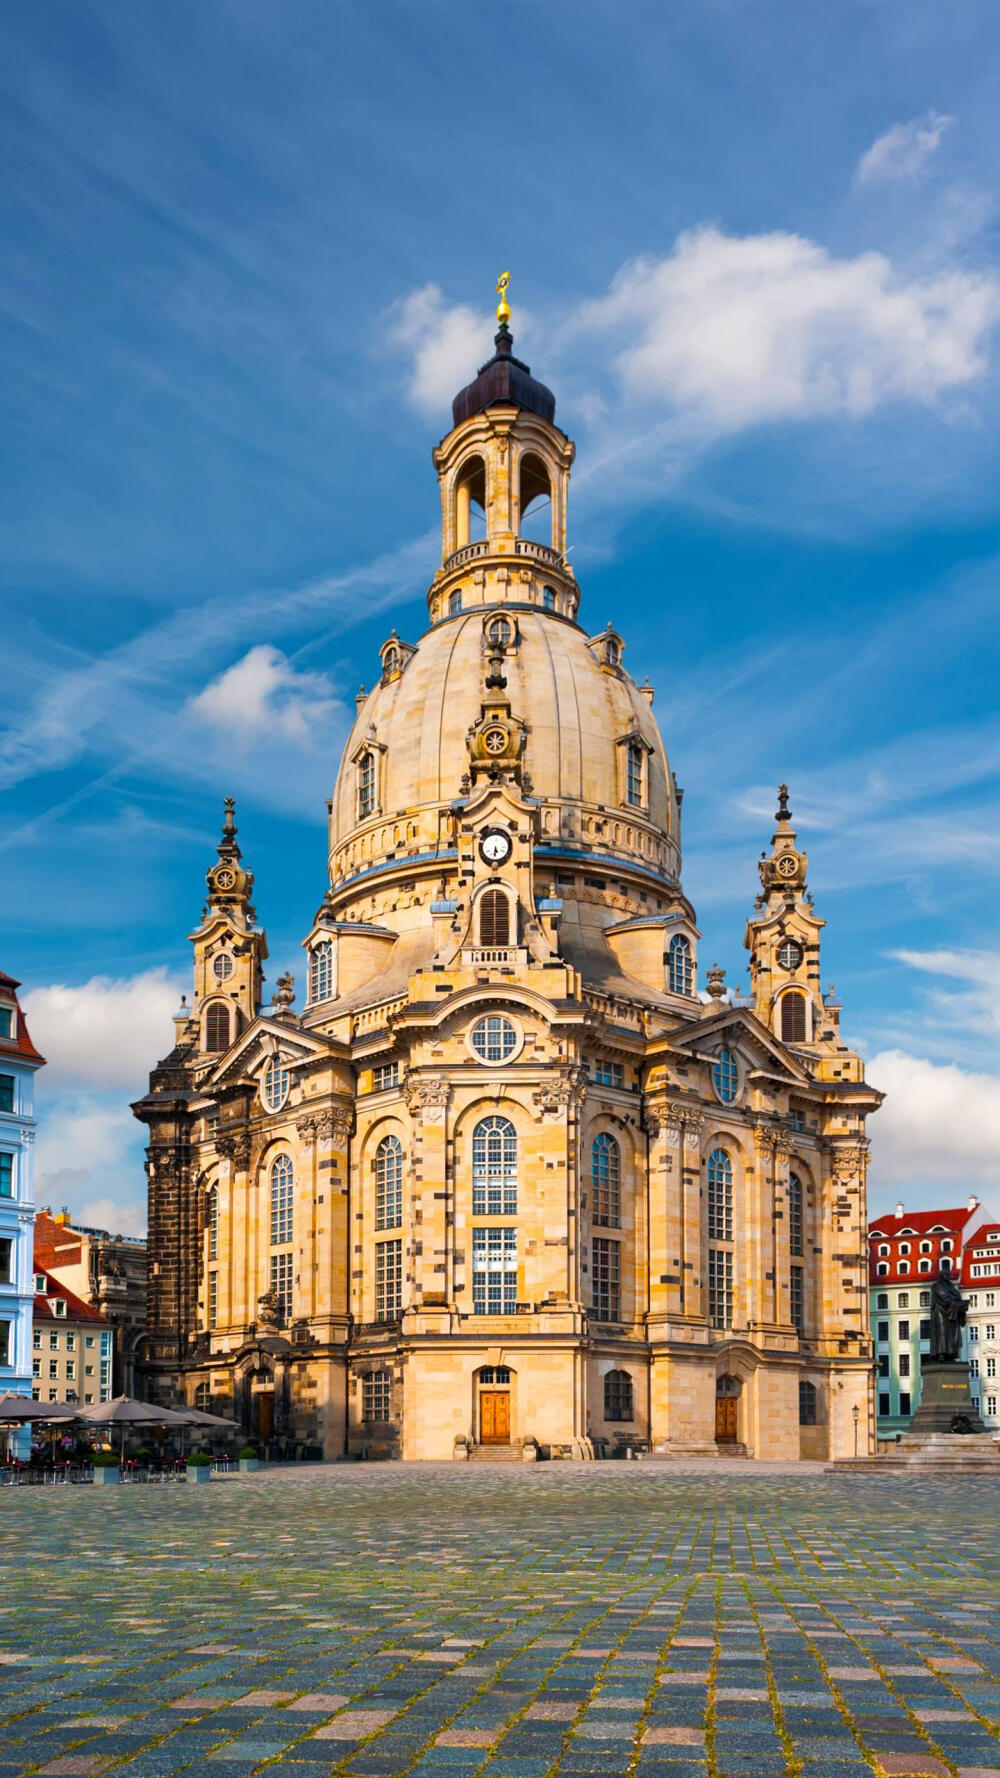 德累斯顿圣母大教堂不仅是巴洛克建筑的杰作,更以其优美高耸的穹顶